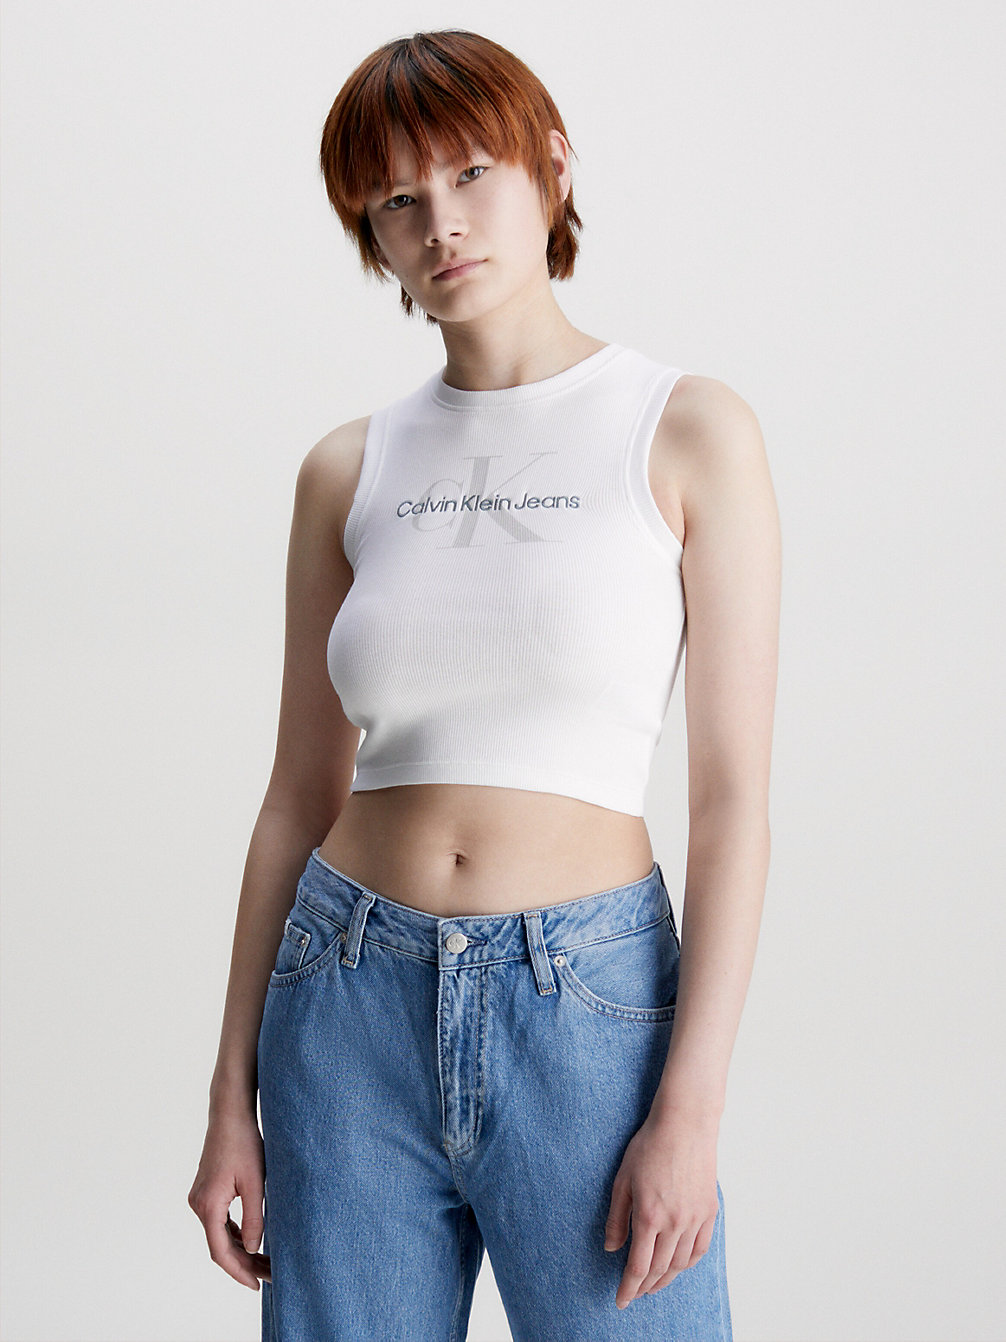 BRIGHT WHITE Cropped Monogram Tank Top undefined women Calvin Klein